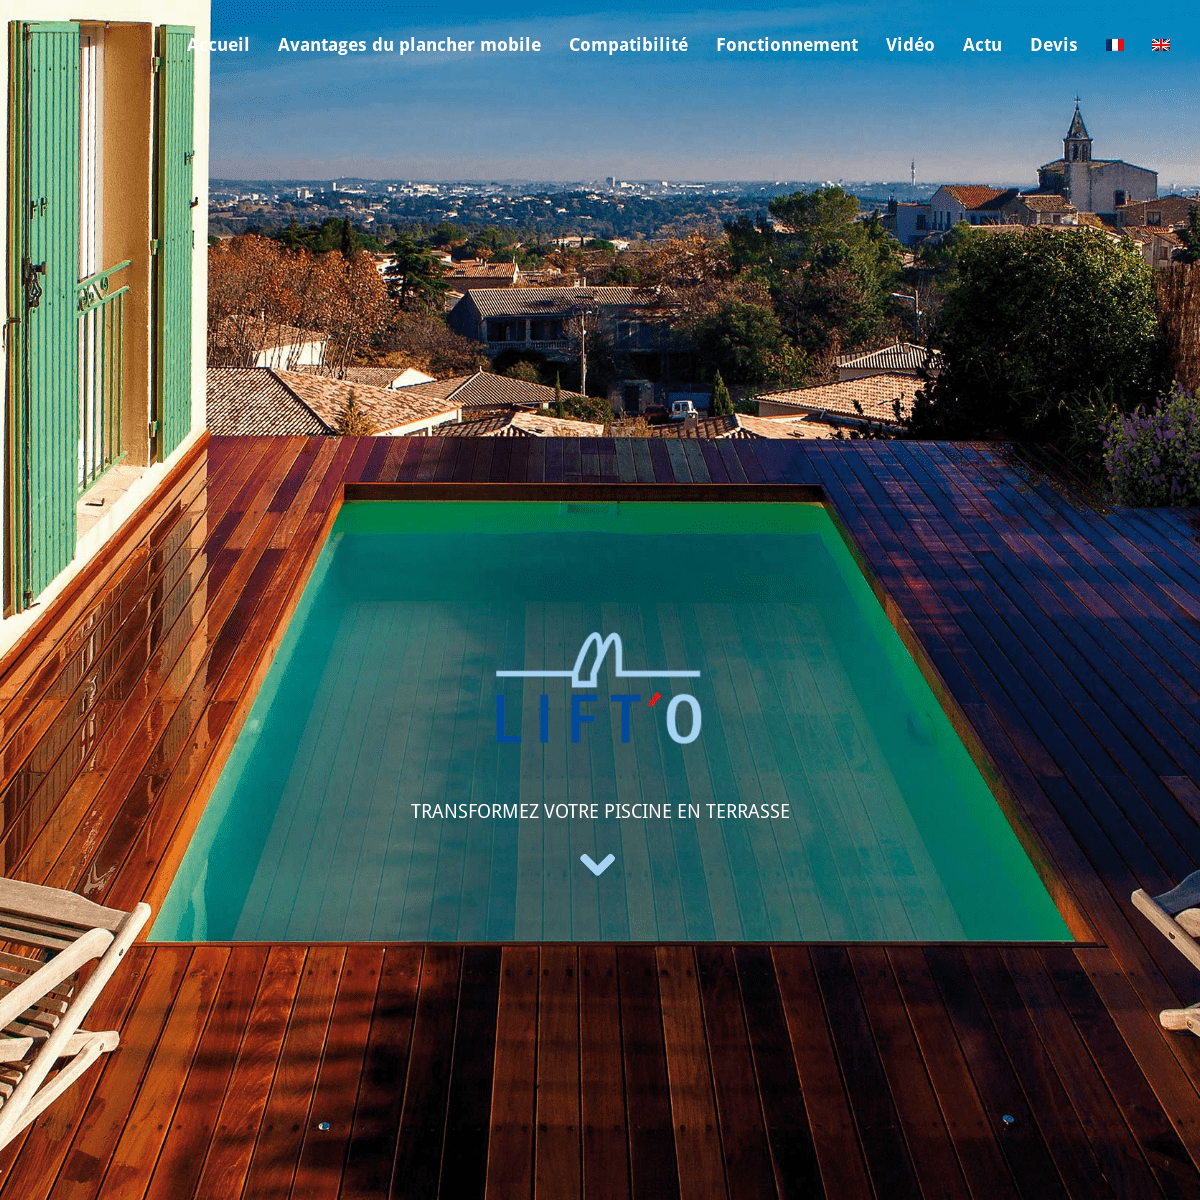 LIFT'O - Le plancher mobile qui change votre espace piscine - Lift'o - Plancher mobile pour piscines